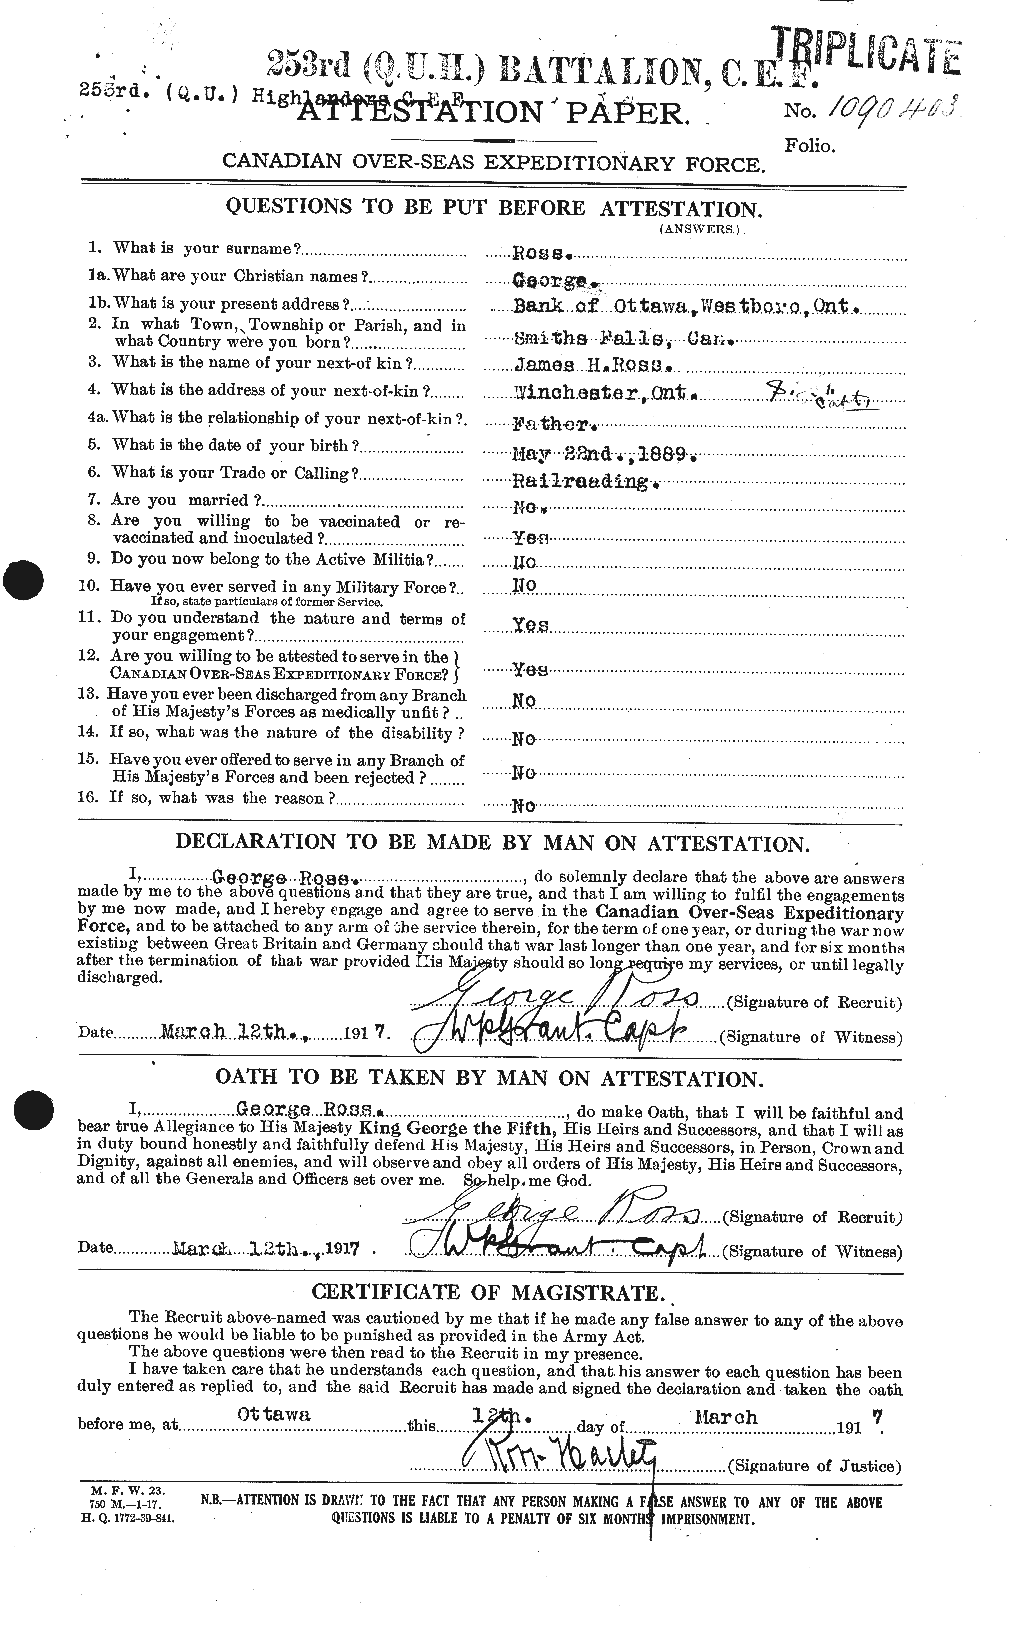 Dossiers du Personnel de la Première Guerre mondiale - CEC 613059a